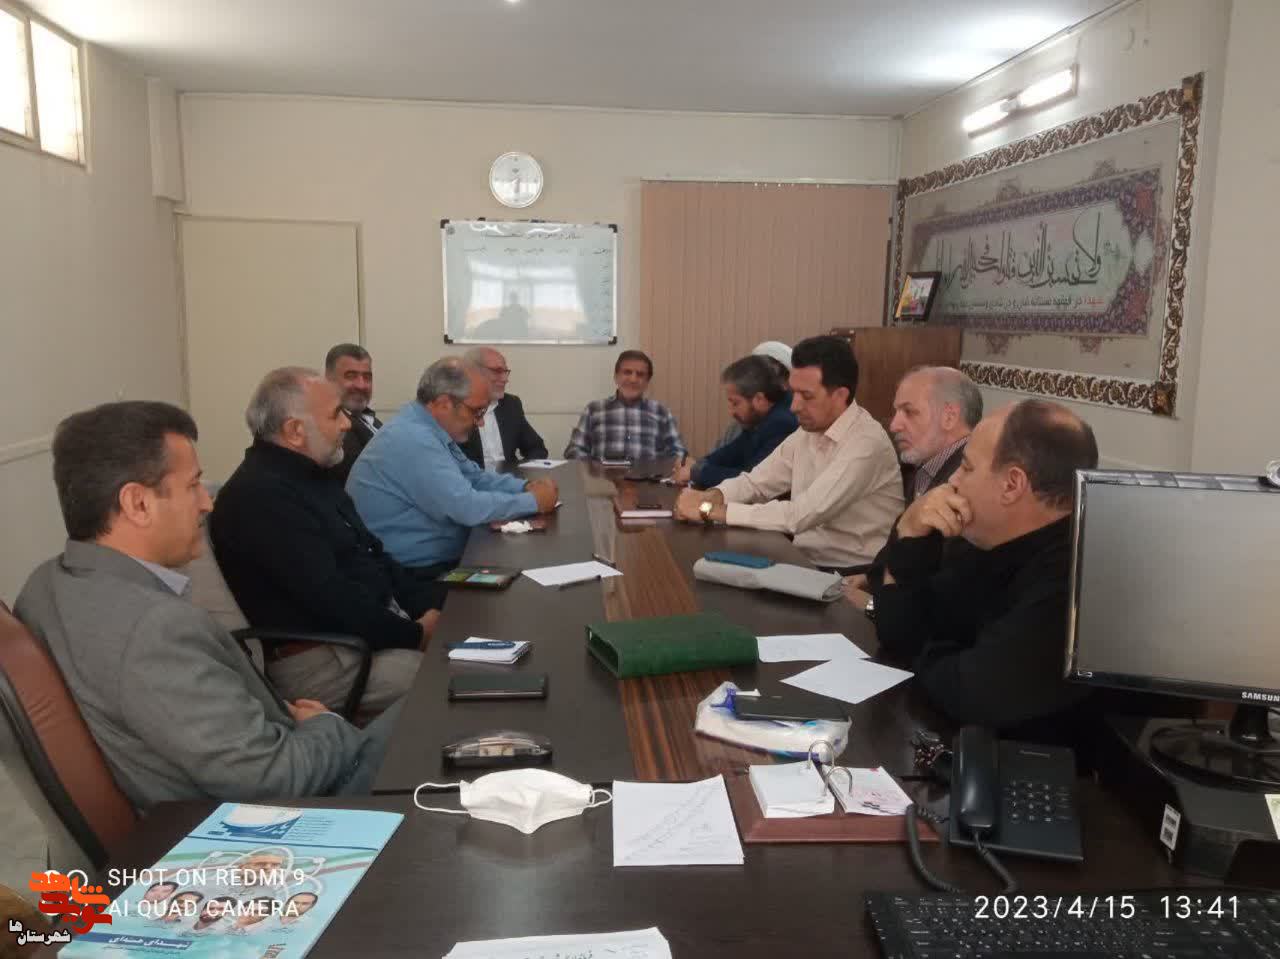 نخستین جلسه معتمد معین بنیاد شهید شهرستان قدس برگزارشد